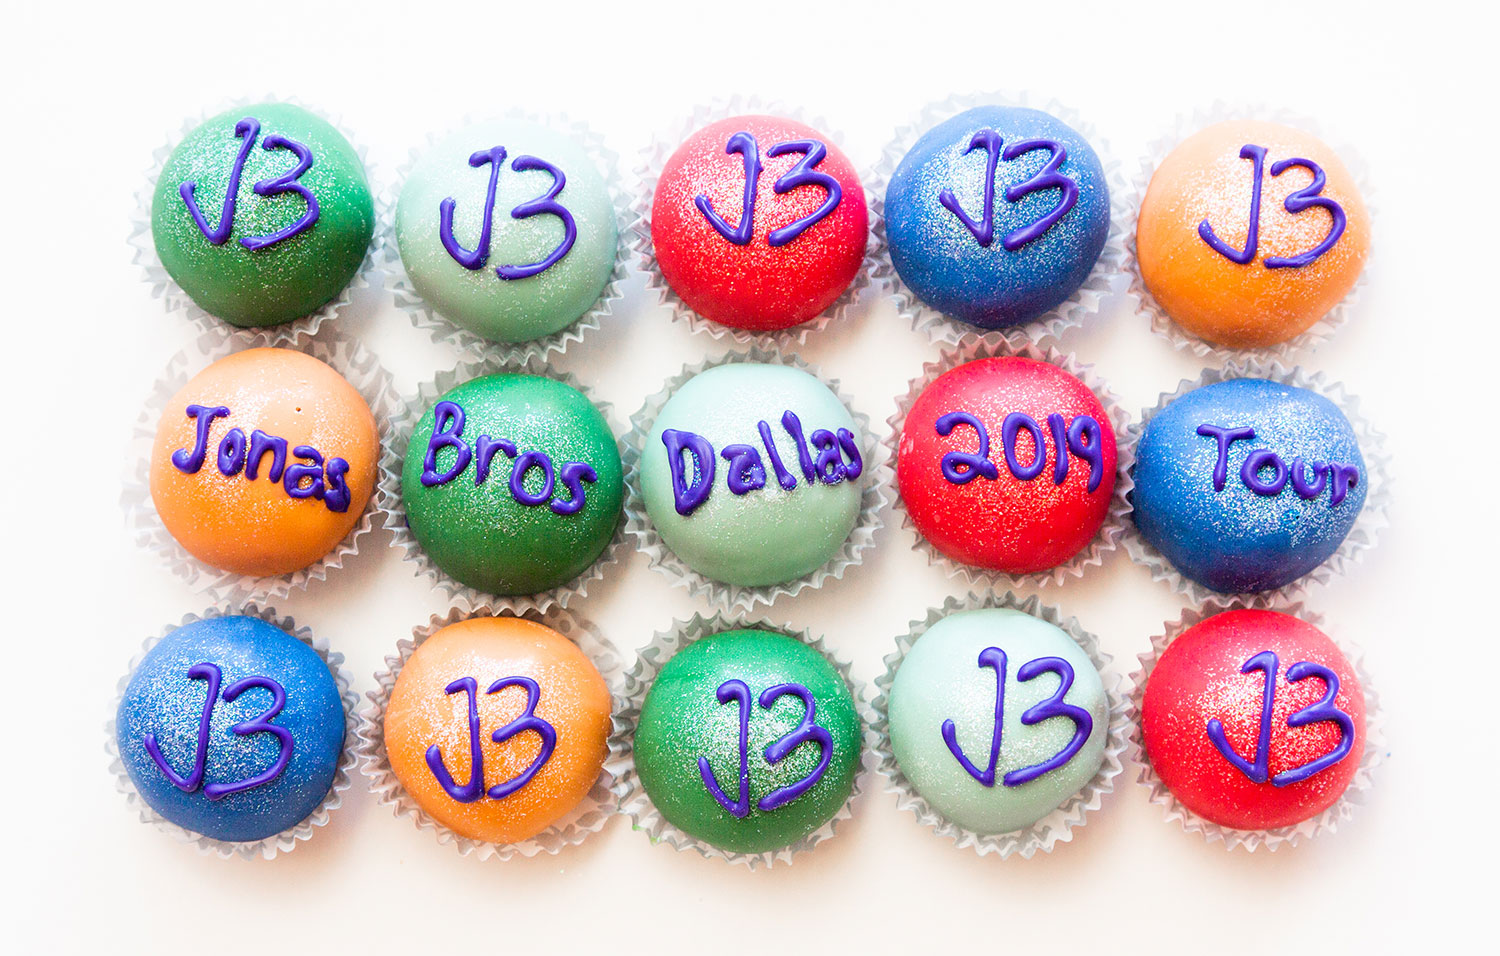 Amazeballz cake balls for the Jonas Brothers // photos Jennifer Shertzer